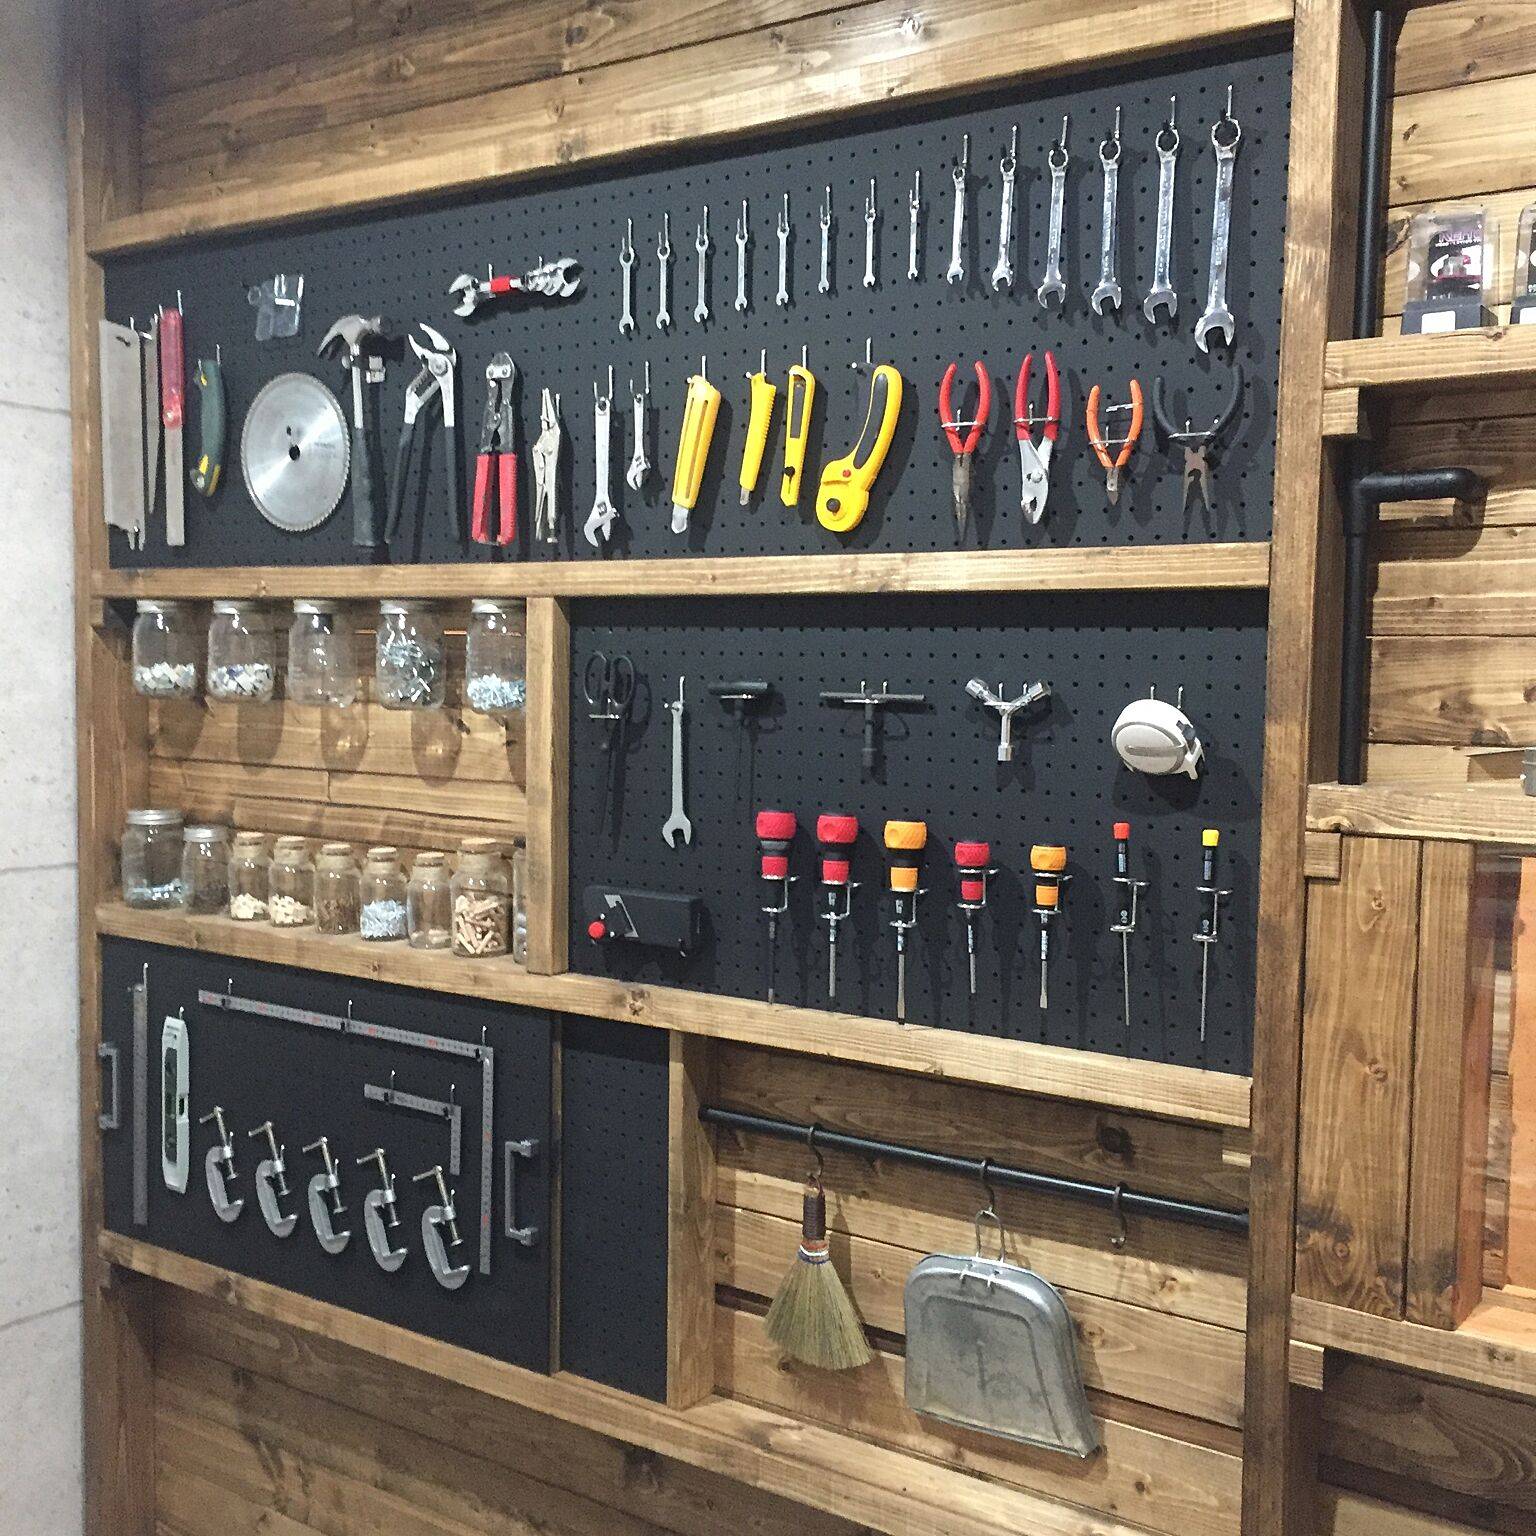 Как развесить инструменты на стене в гараже: идеи и советы по обустройству гаража - все об инженерных системах